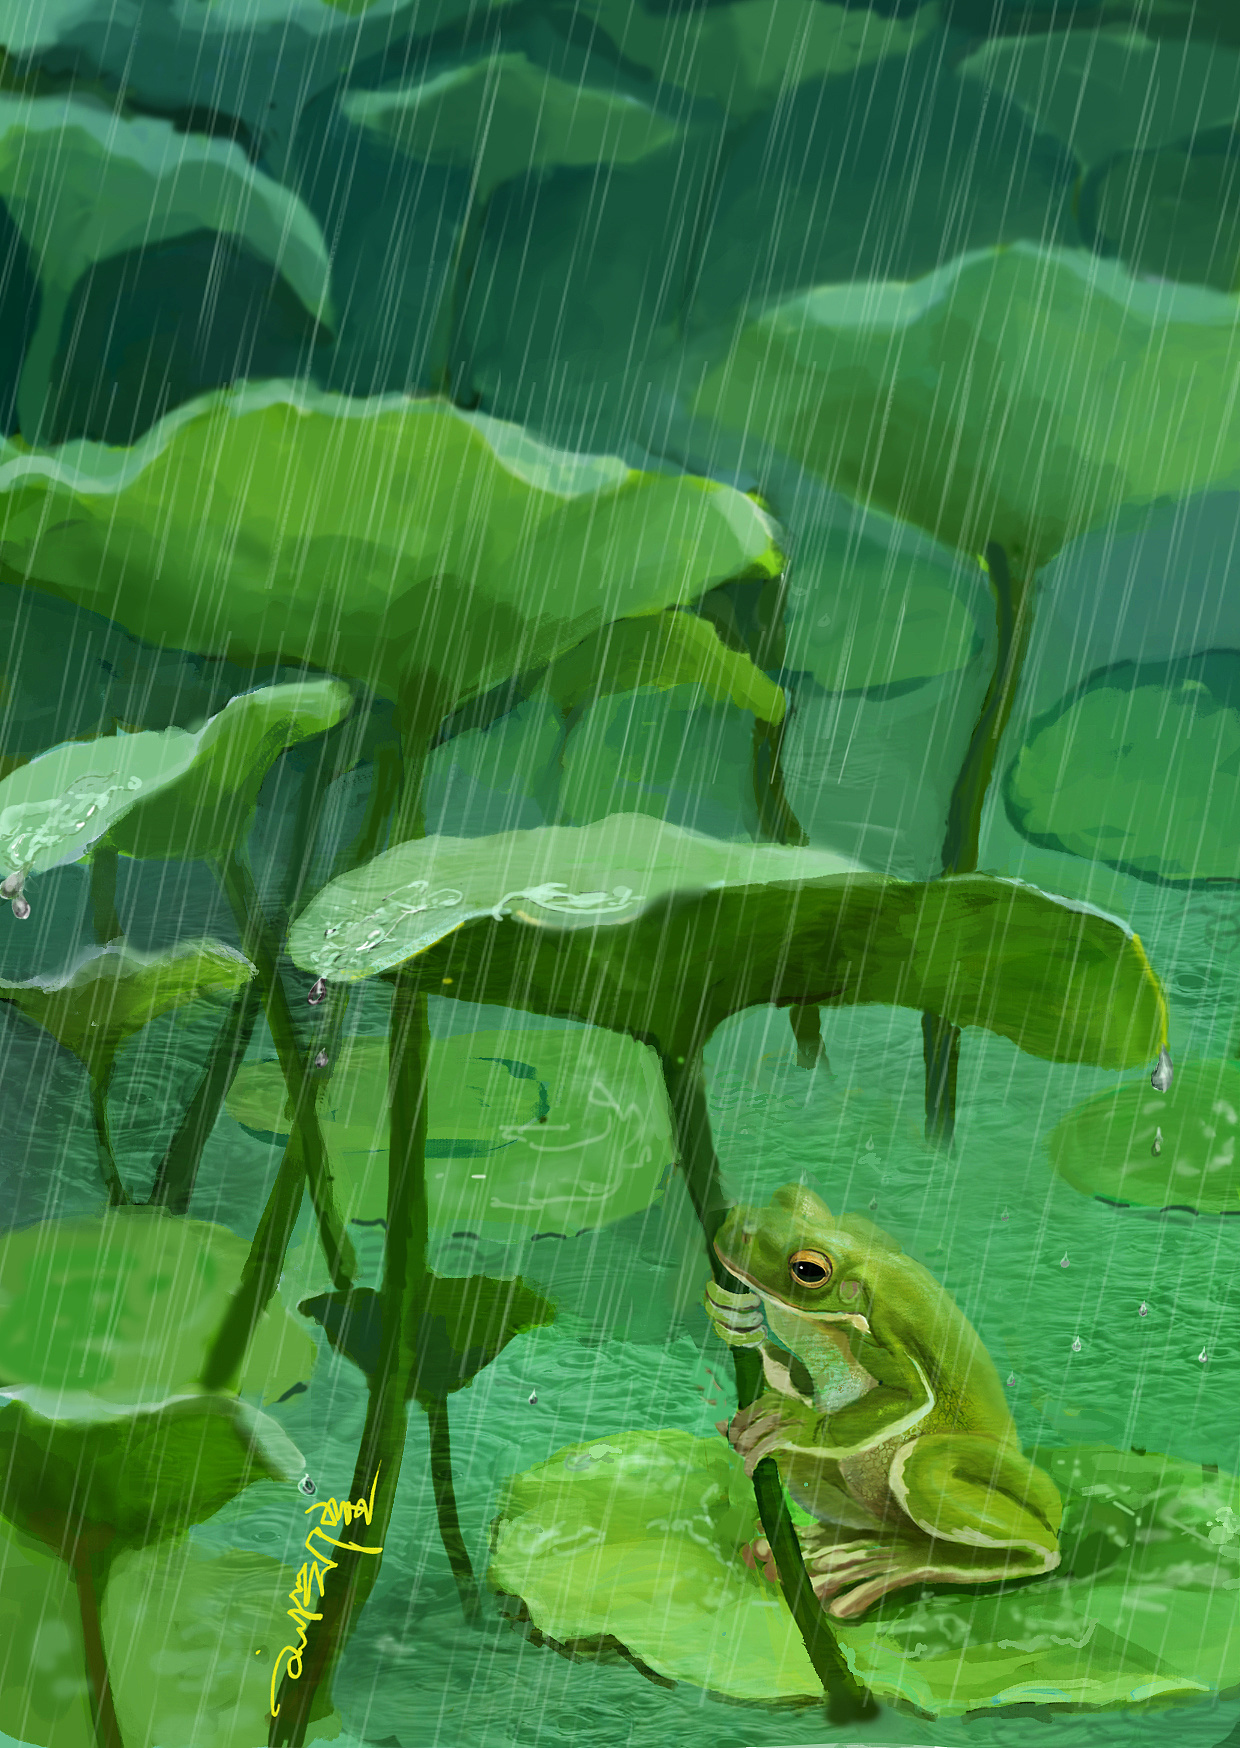 池塘里的青蛙绿色壁纸_桌面壁纸_mm4000图片大全